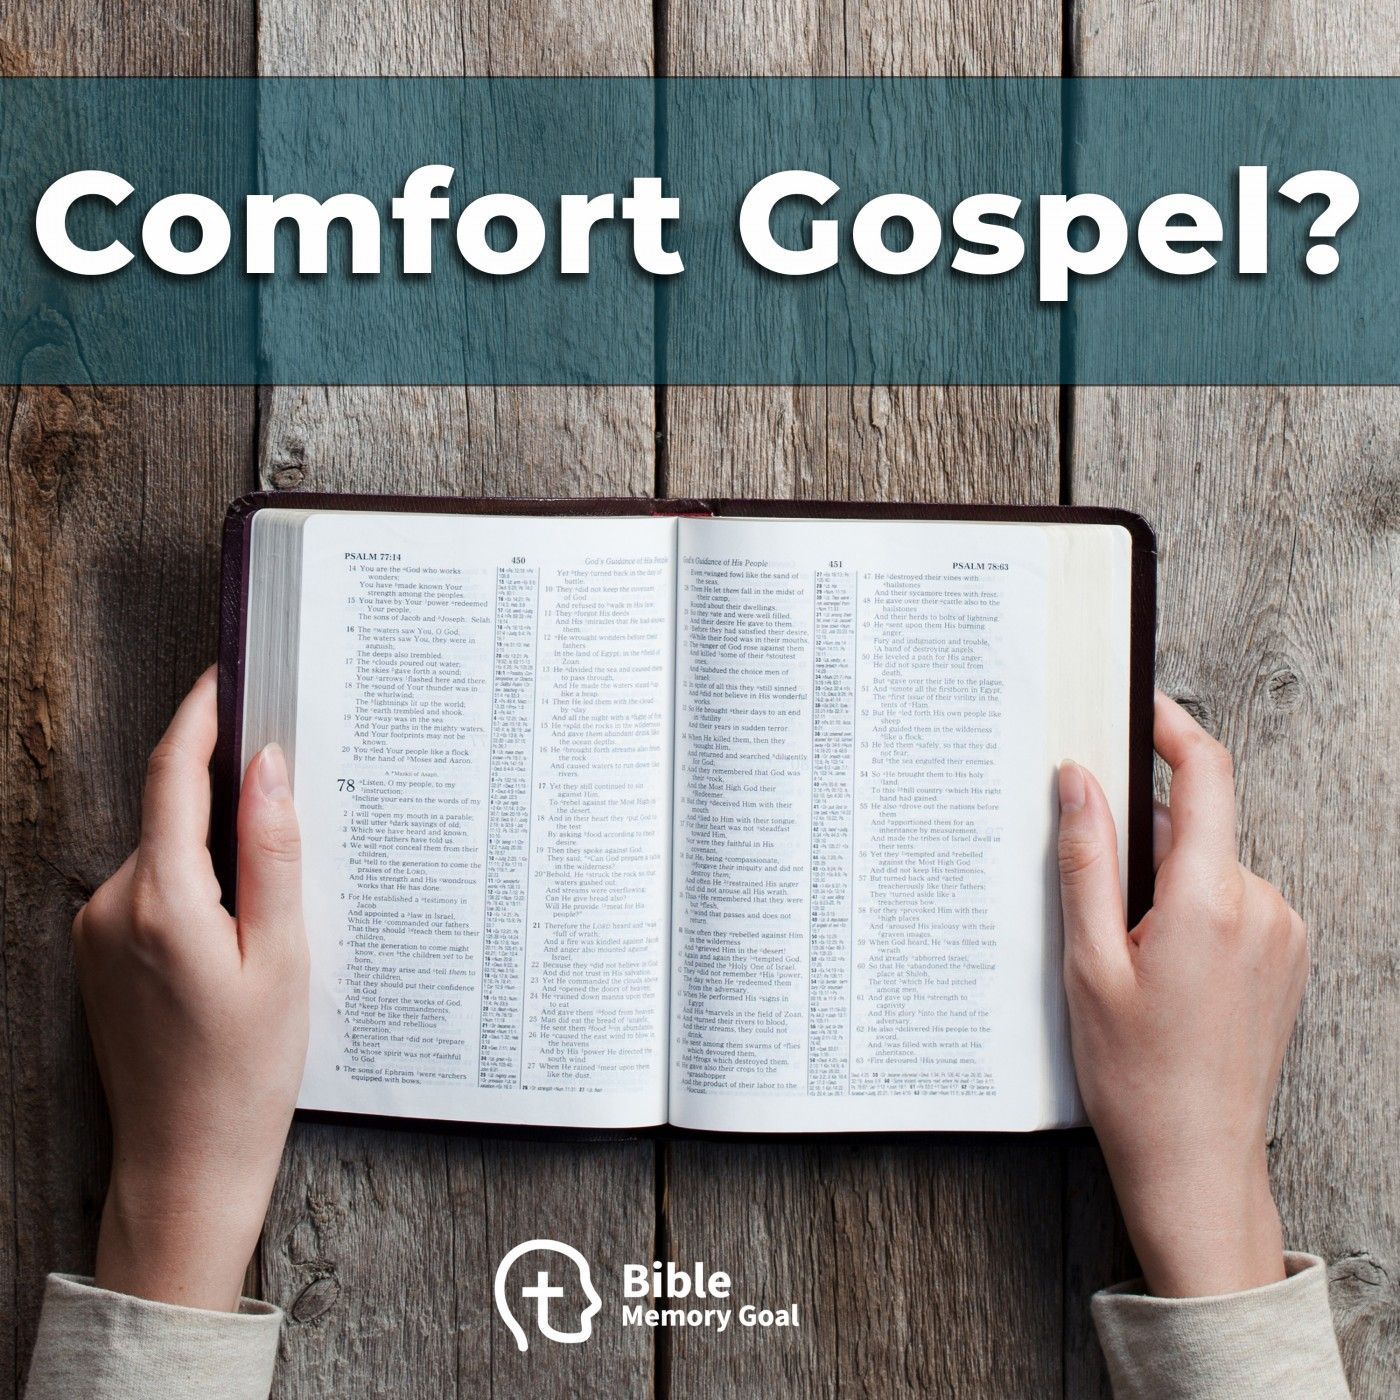 Dangers of the ”Comfort Gospel”